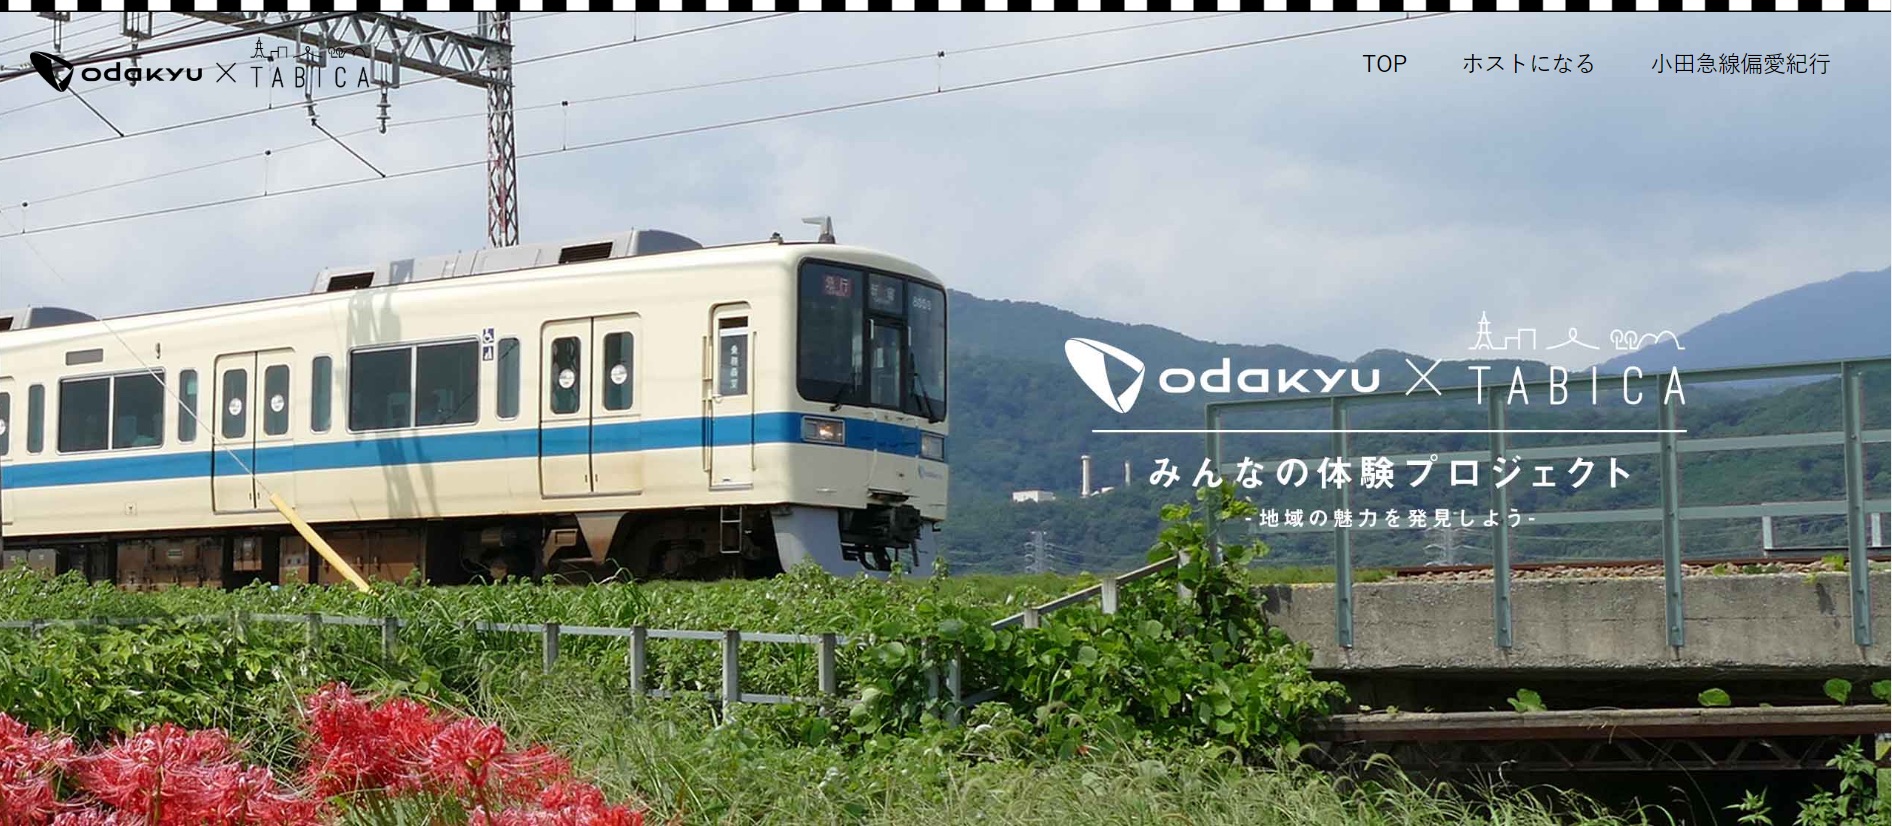 小田急電鉄、タビナカ予約「TABICA」と協業、沿線の地域体験をCtoCで、ホストとゲストを仲介